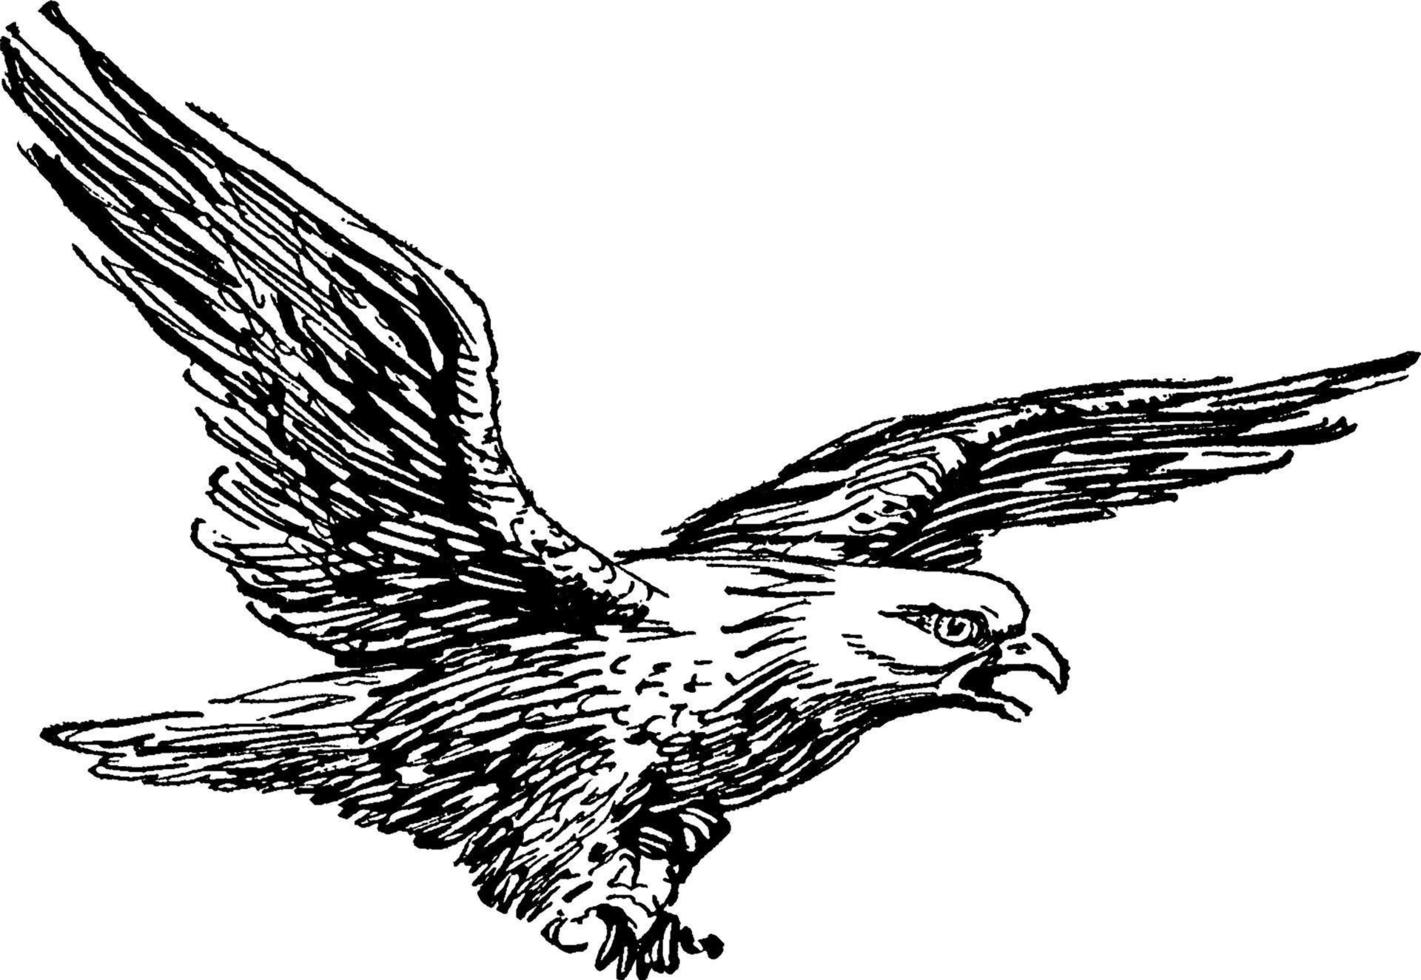 águila calva o haliaeetus leucocephalus, ilustración vintage vector